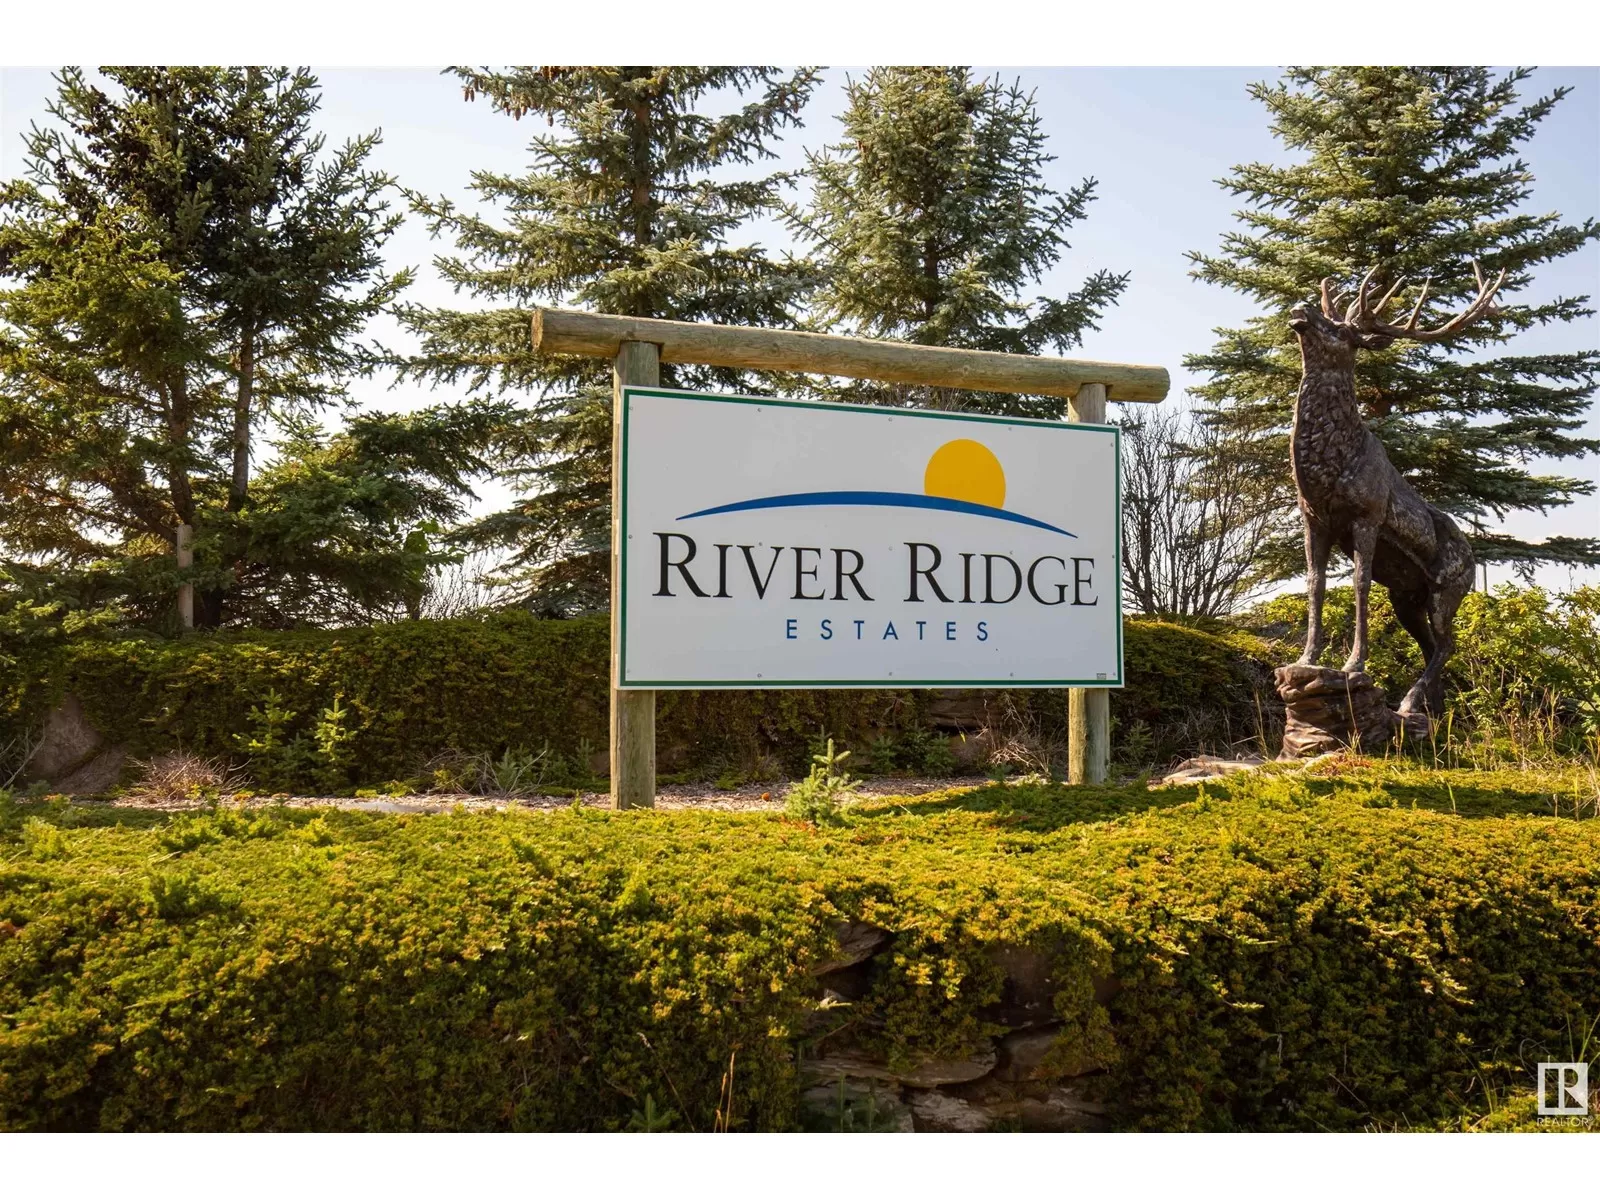 No Building for rent: 5 River Ridge Es, Rural Wetaskiwin County, Alberta T0C 0V0